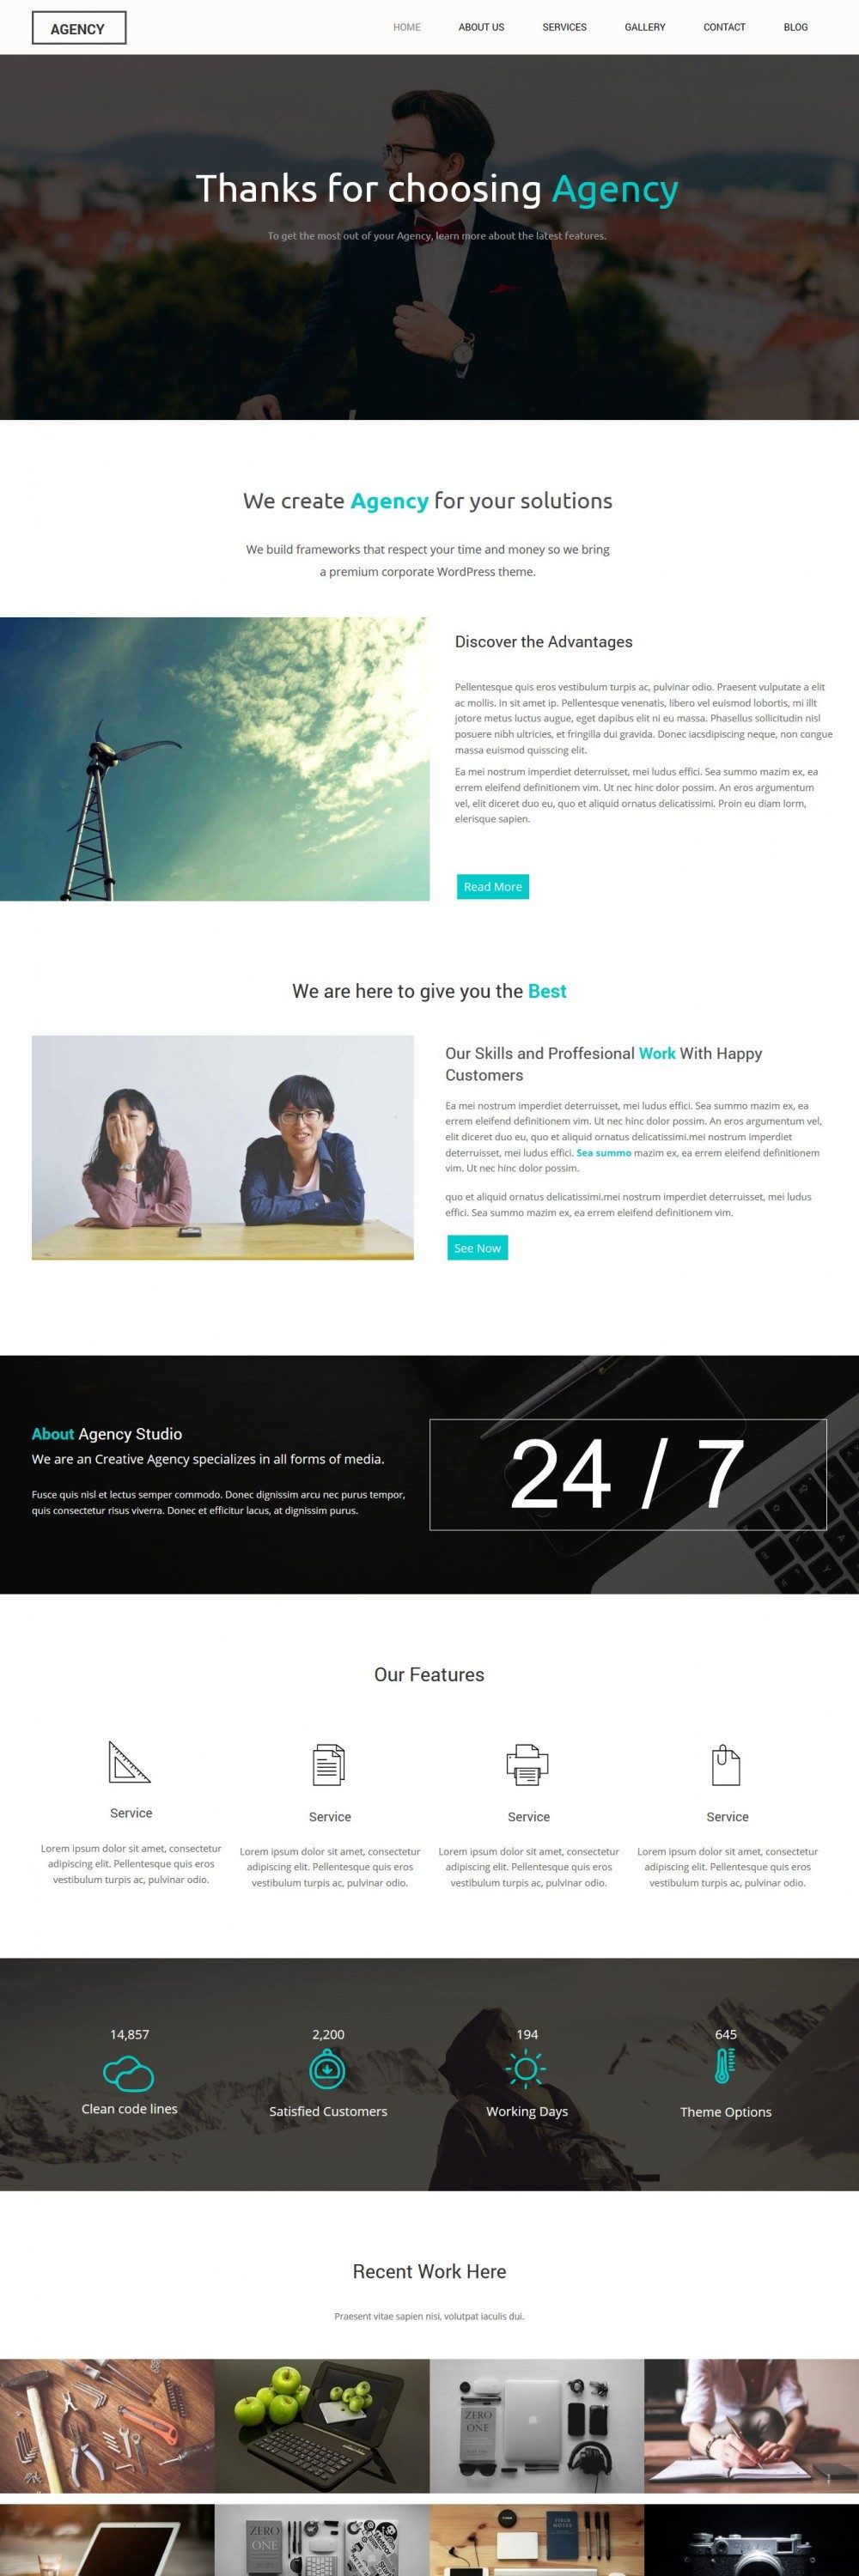 Agency - Drupal Web Design Theme